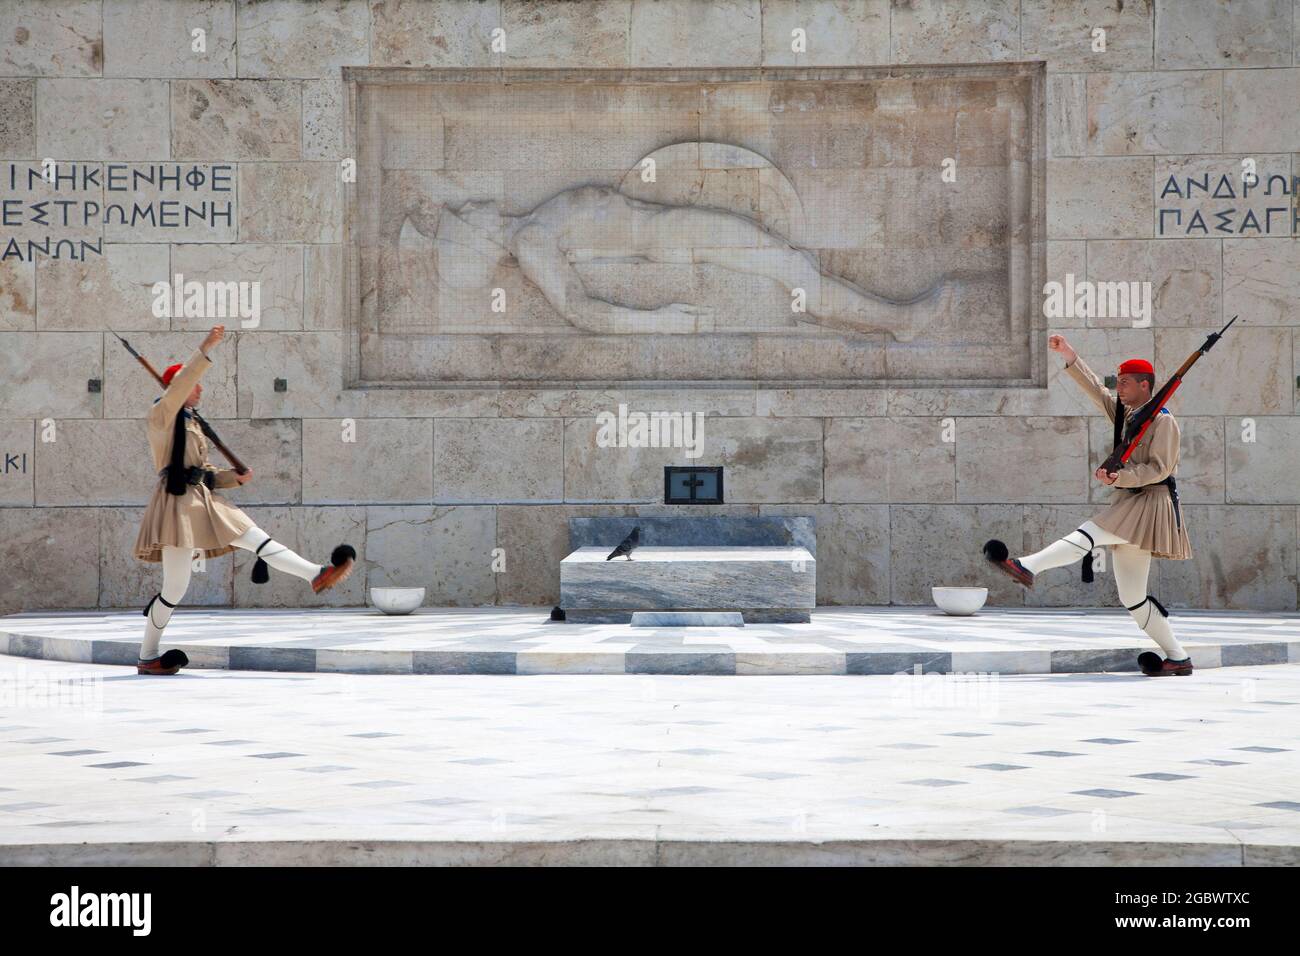 Guardie greche o Evzones - Guardia Presidenziale fuori dal Parlamento ellenico che custodisce la Tomba del Milite Ignoto - Atene, Grecia. Foto Stock